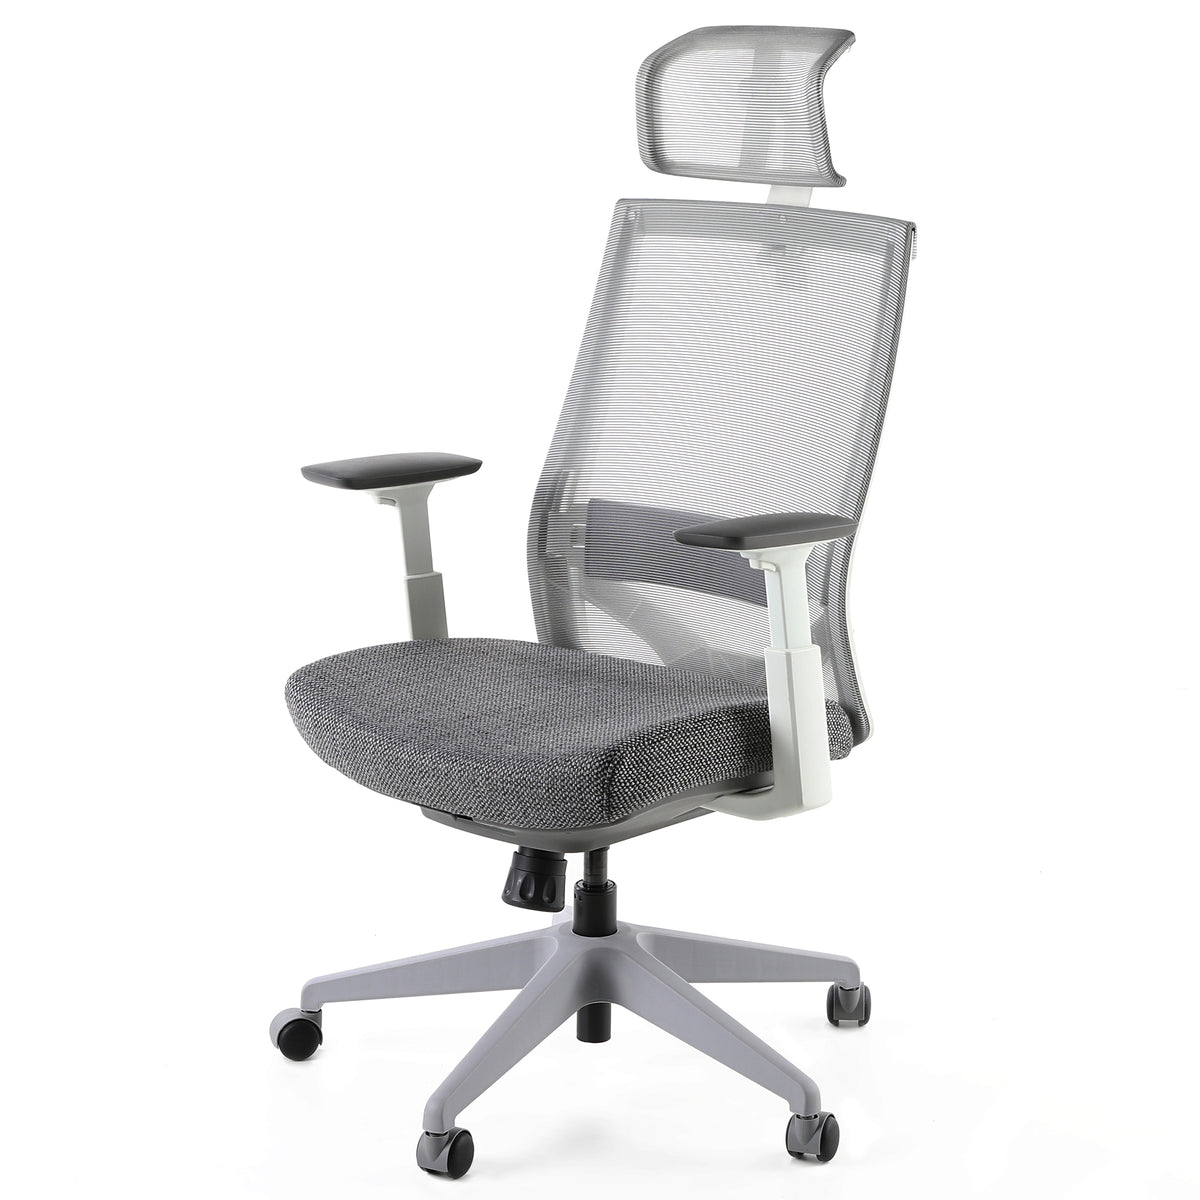 Офисное кресло m5. Кресло Ergonomic Gray. Инновационное кресло MPOSITION.